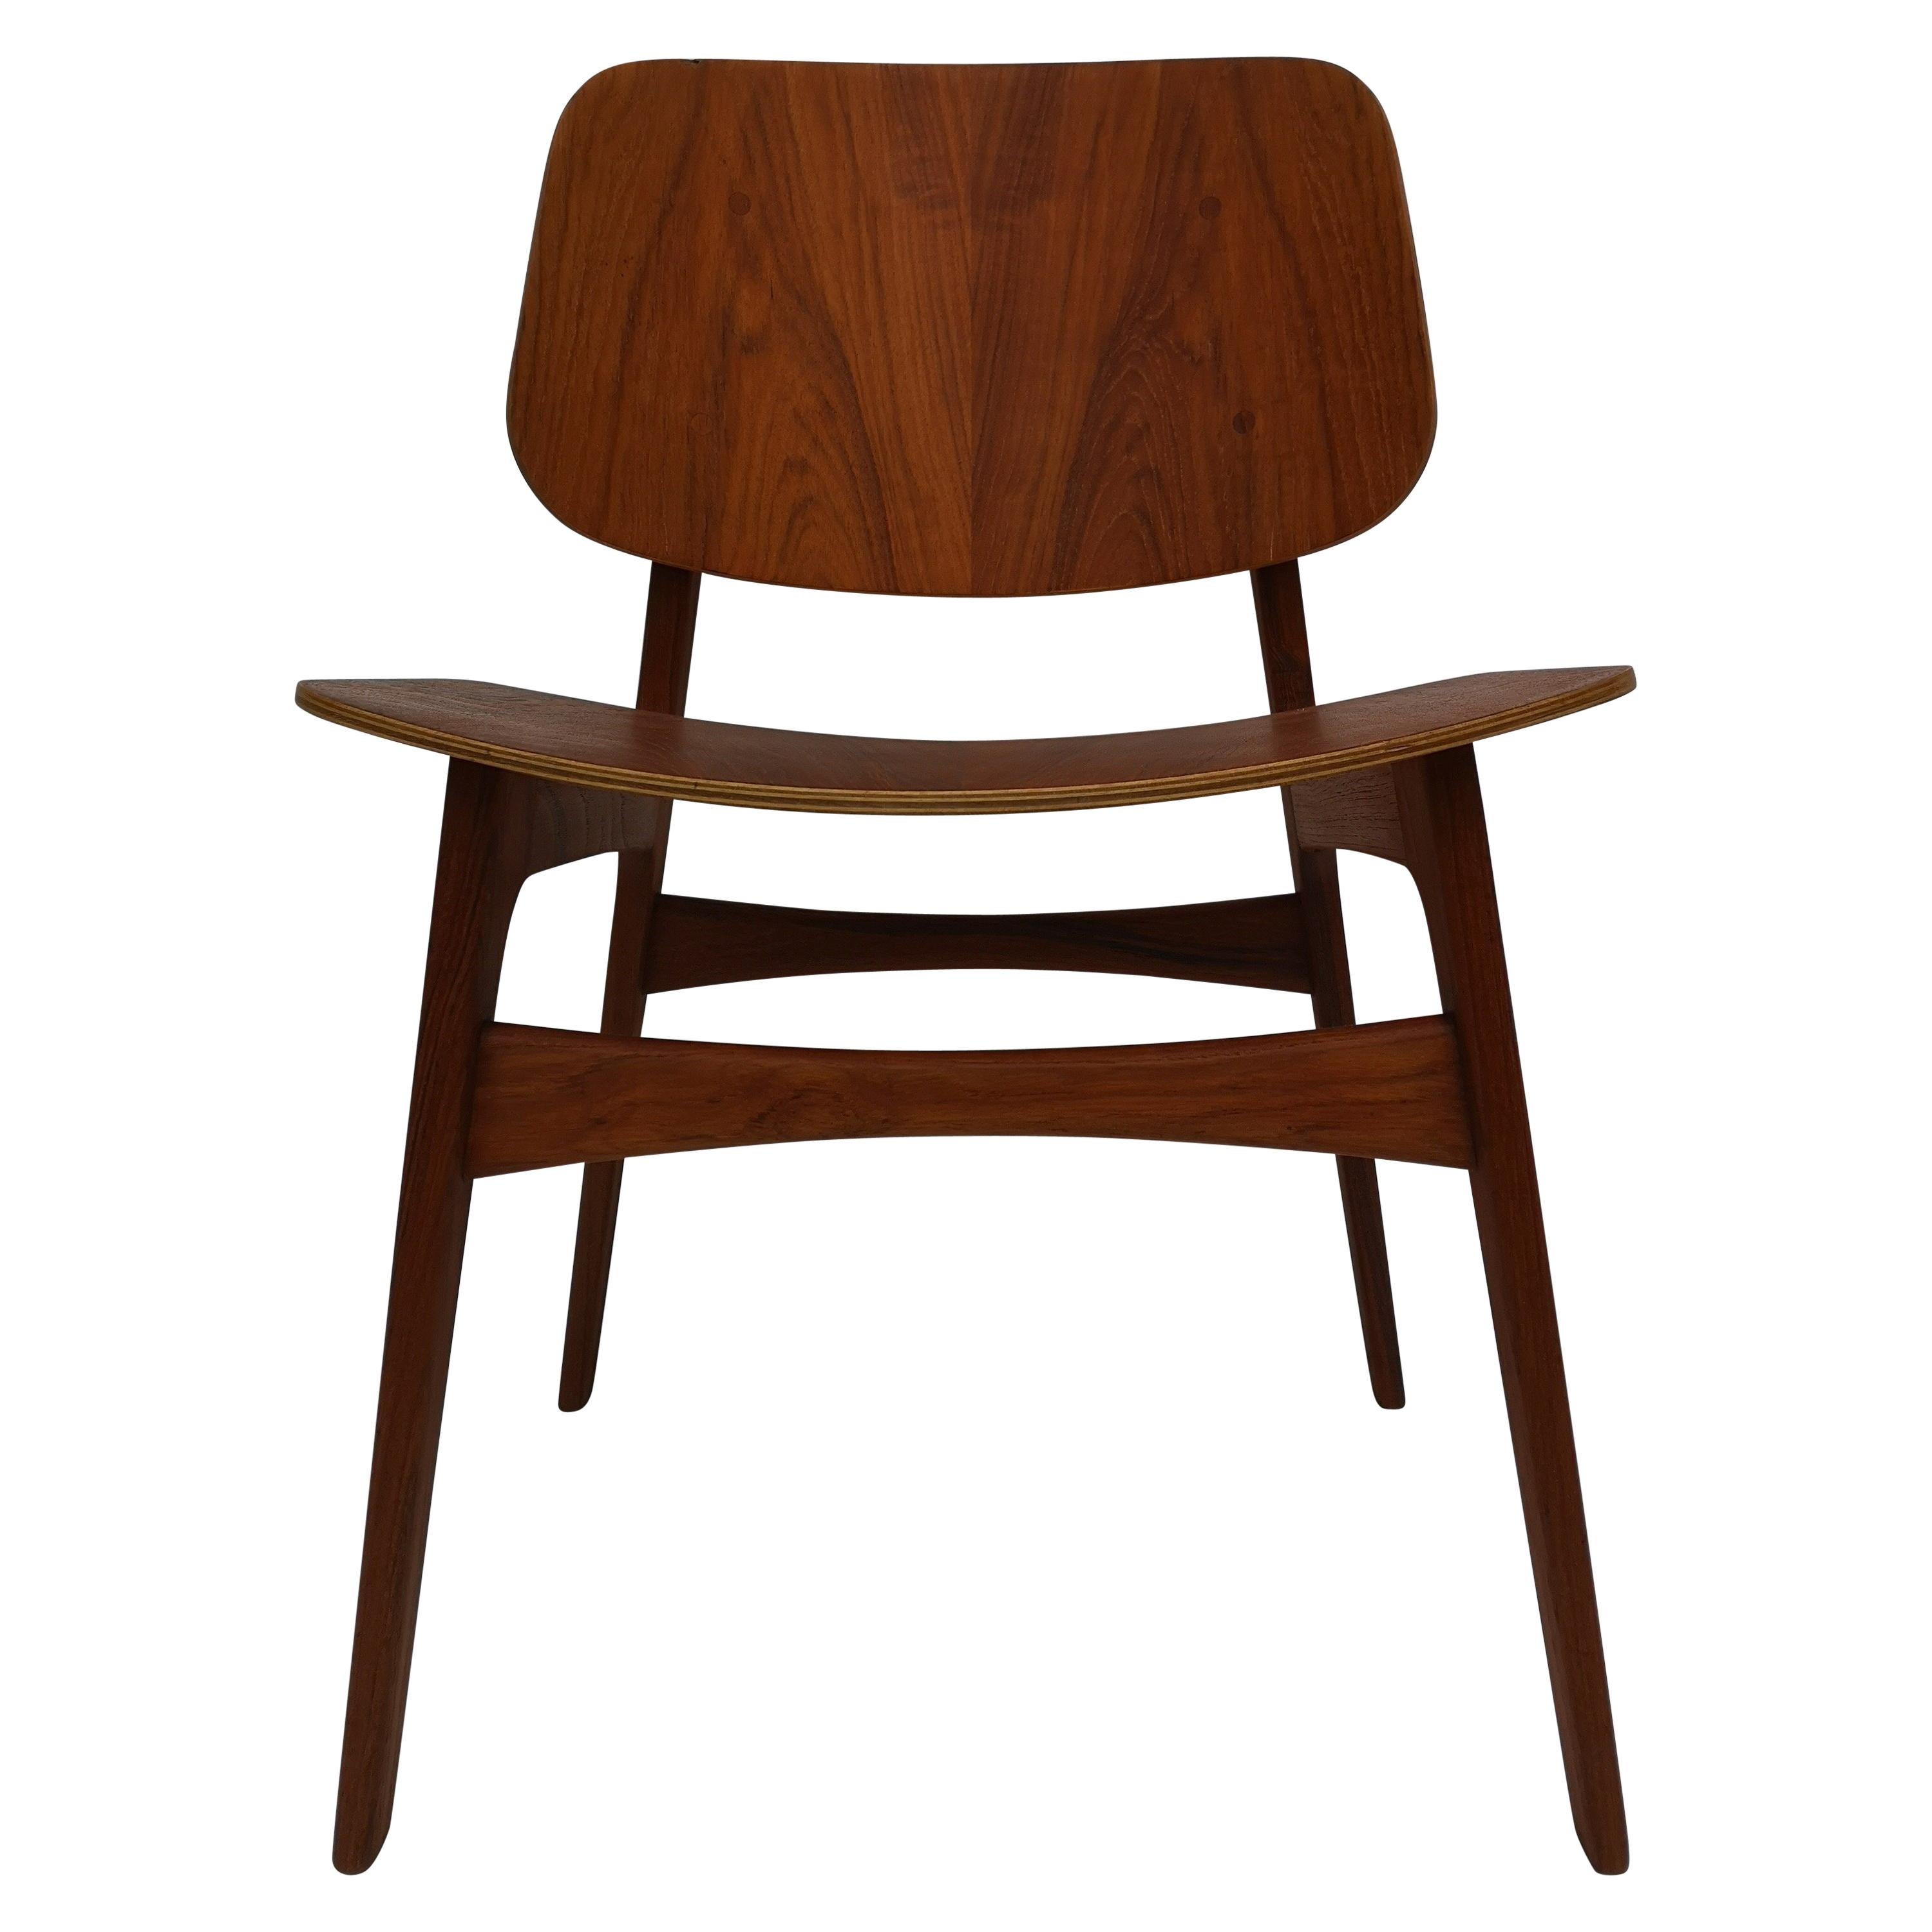 1960s Borge Mogensen Model 122 Teak Dining / Desk Chair for Soborg Mobelfabrik